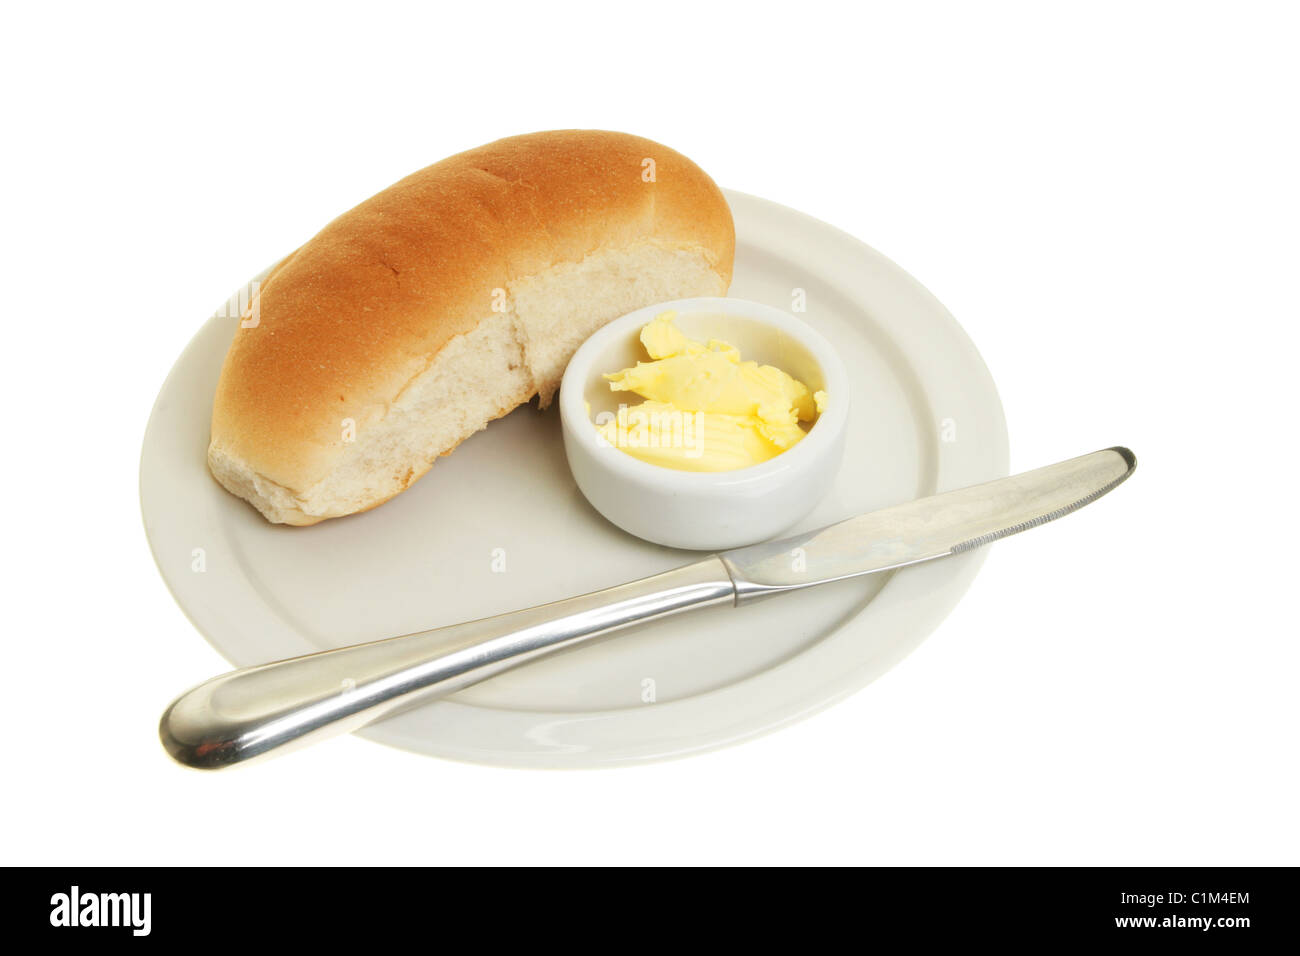 Pane, coltello e burro su una piastra Foto Stock